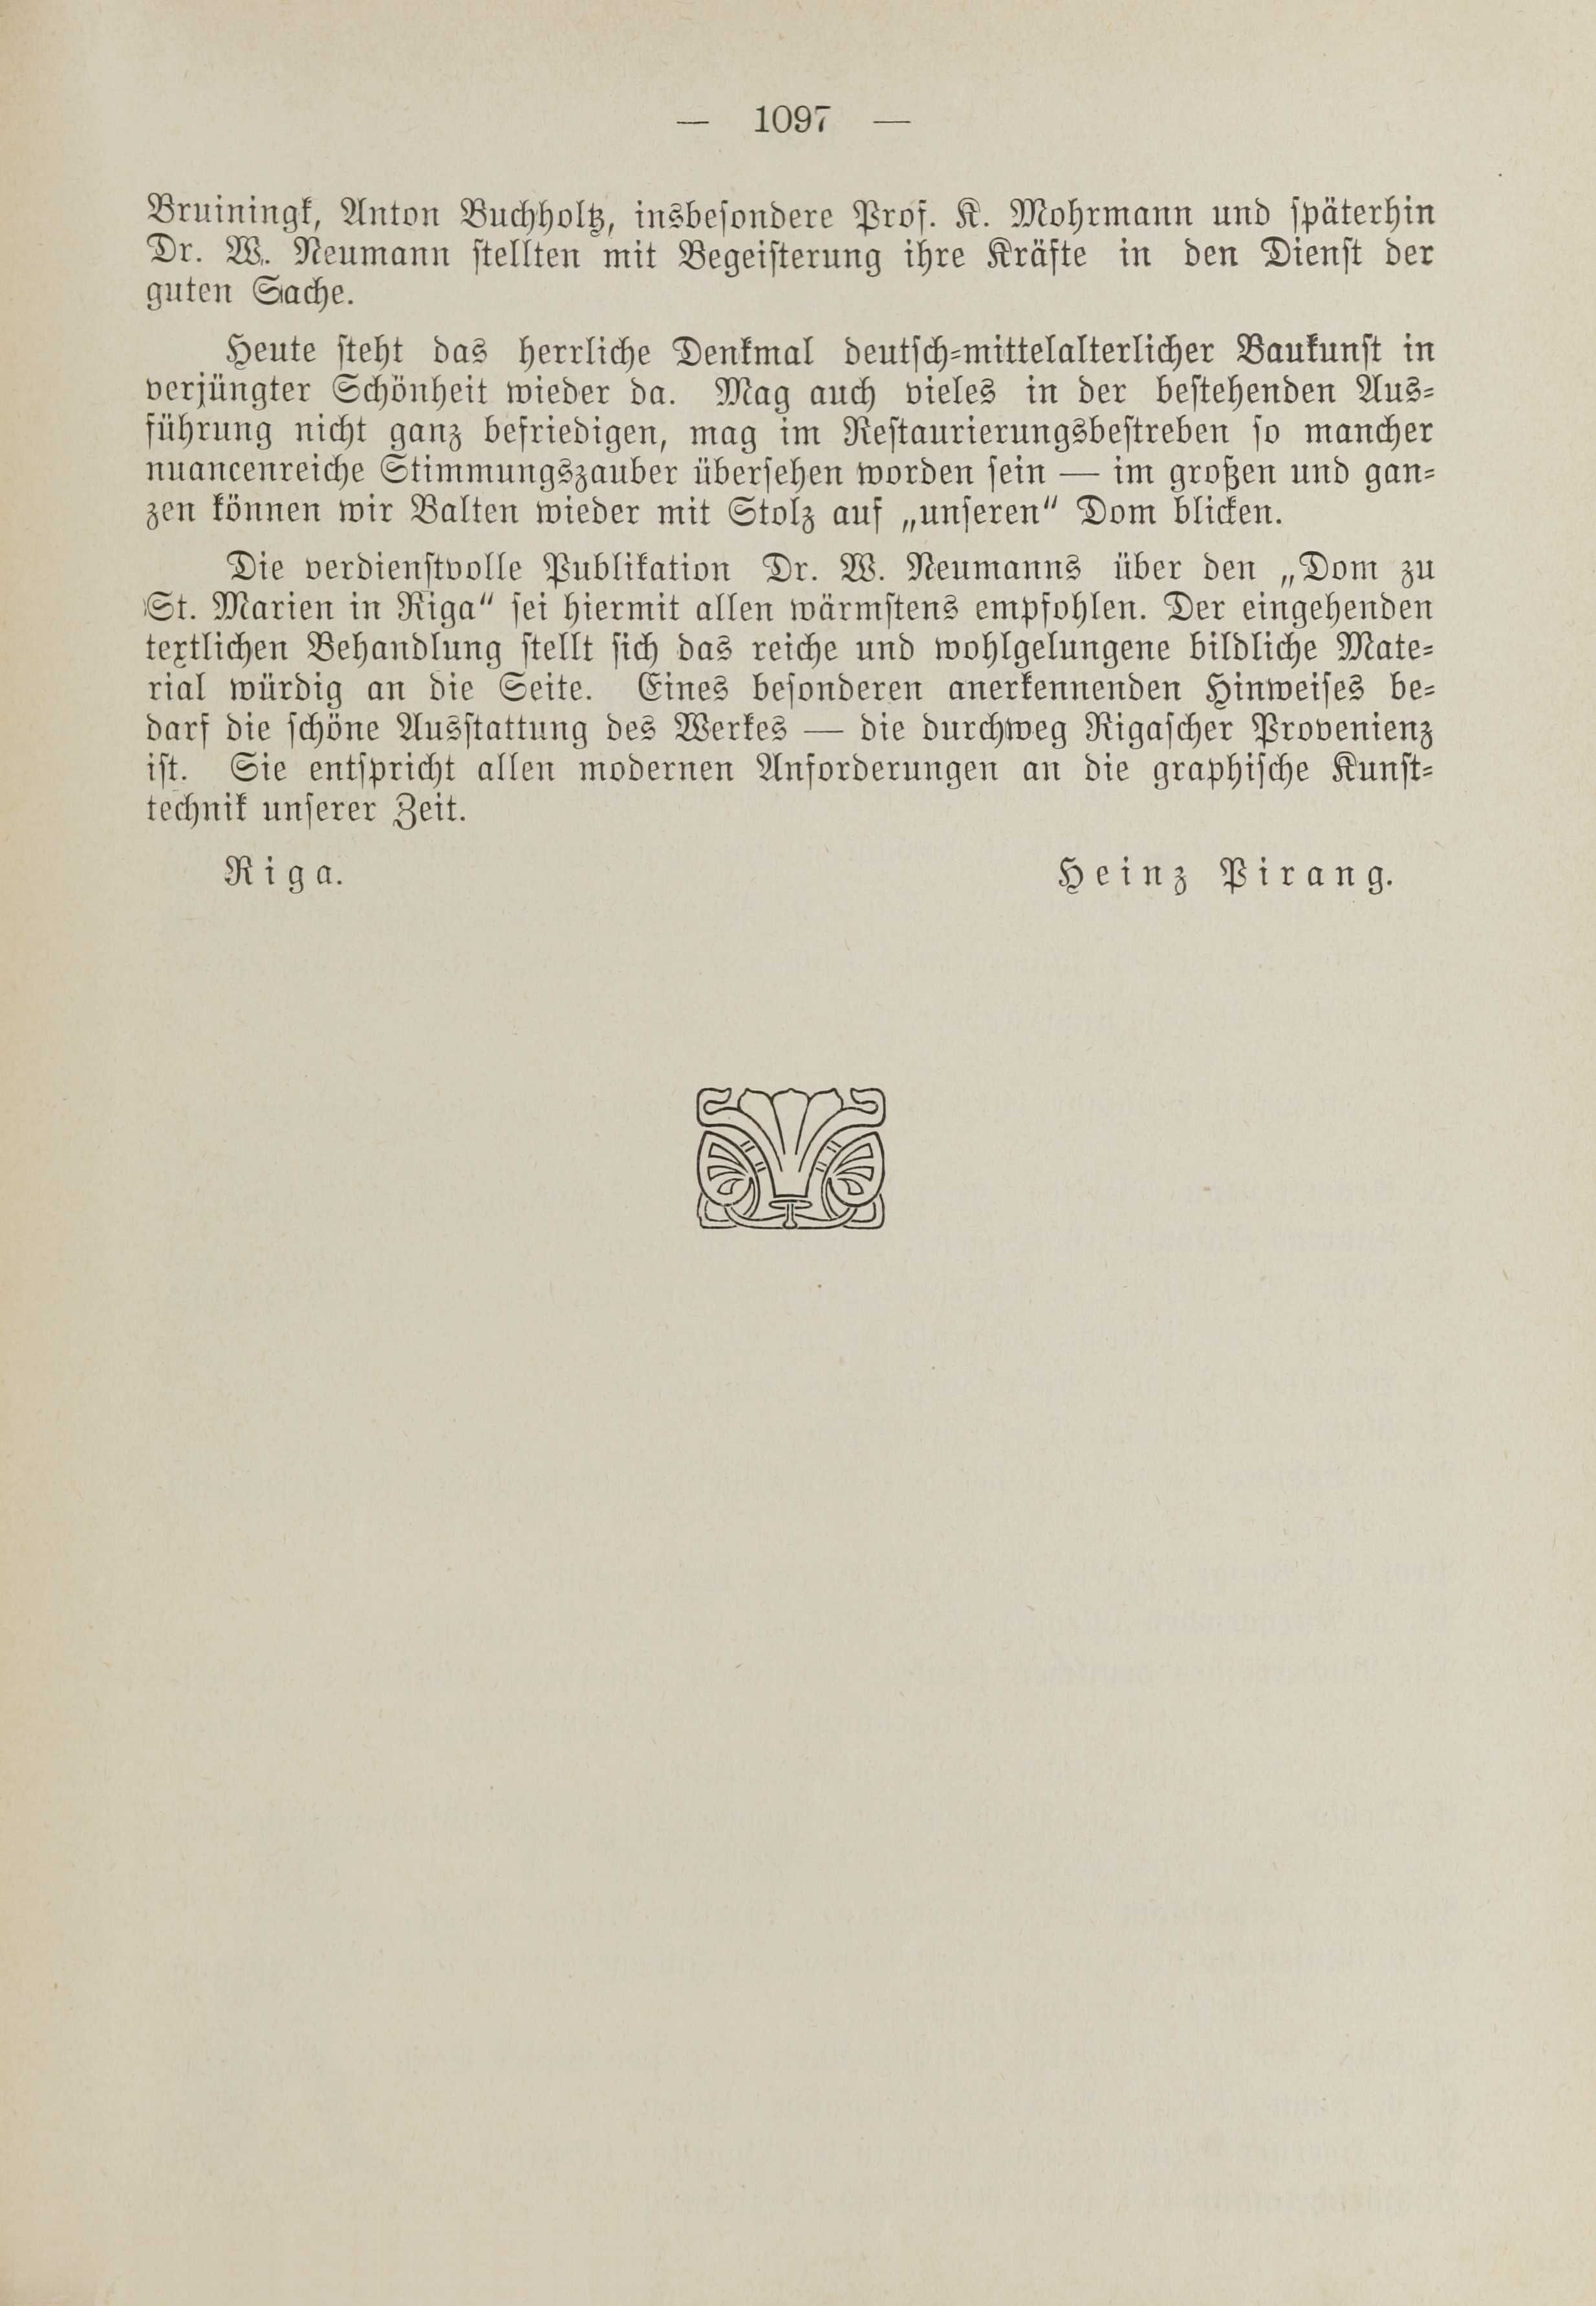 Deutsche Monatsschrift für Russland [1] (1912) | 1105. (1097) Main body of text